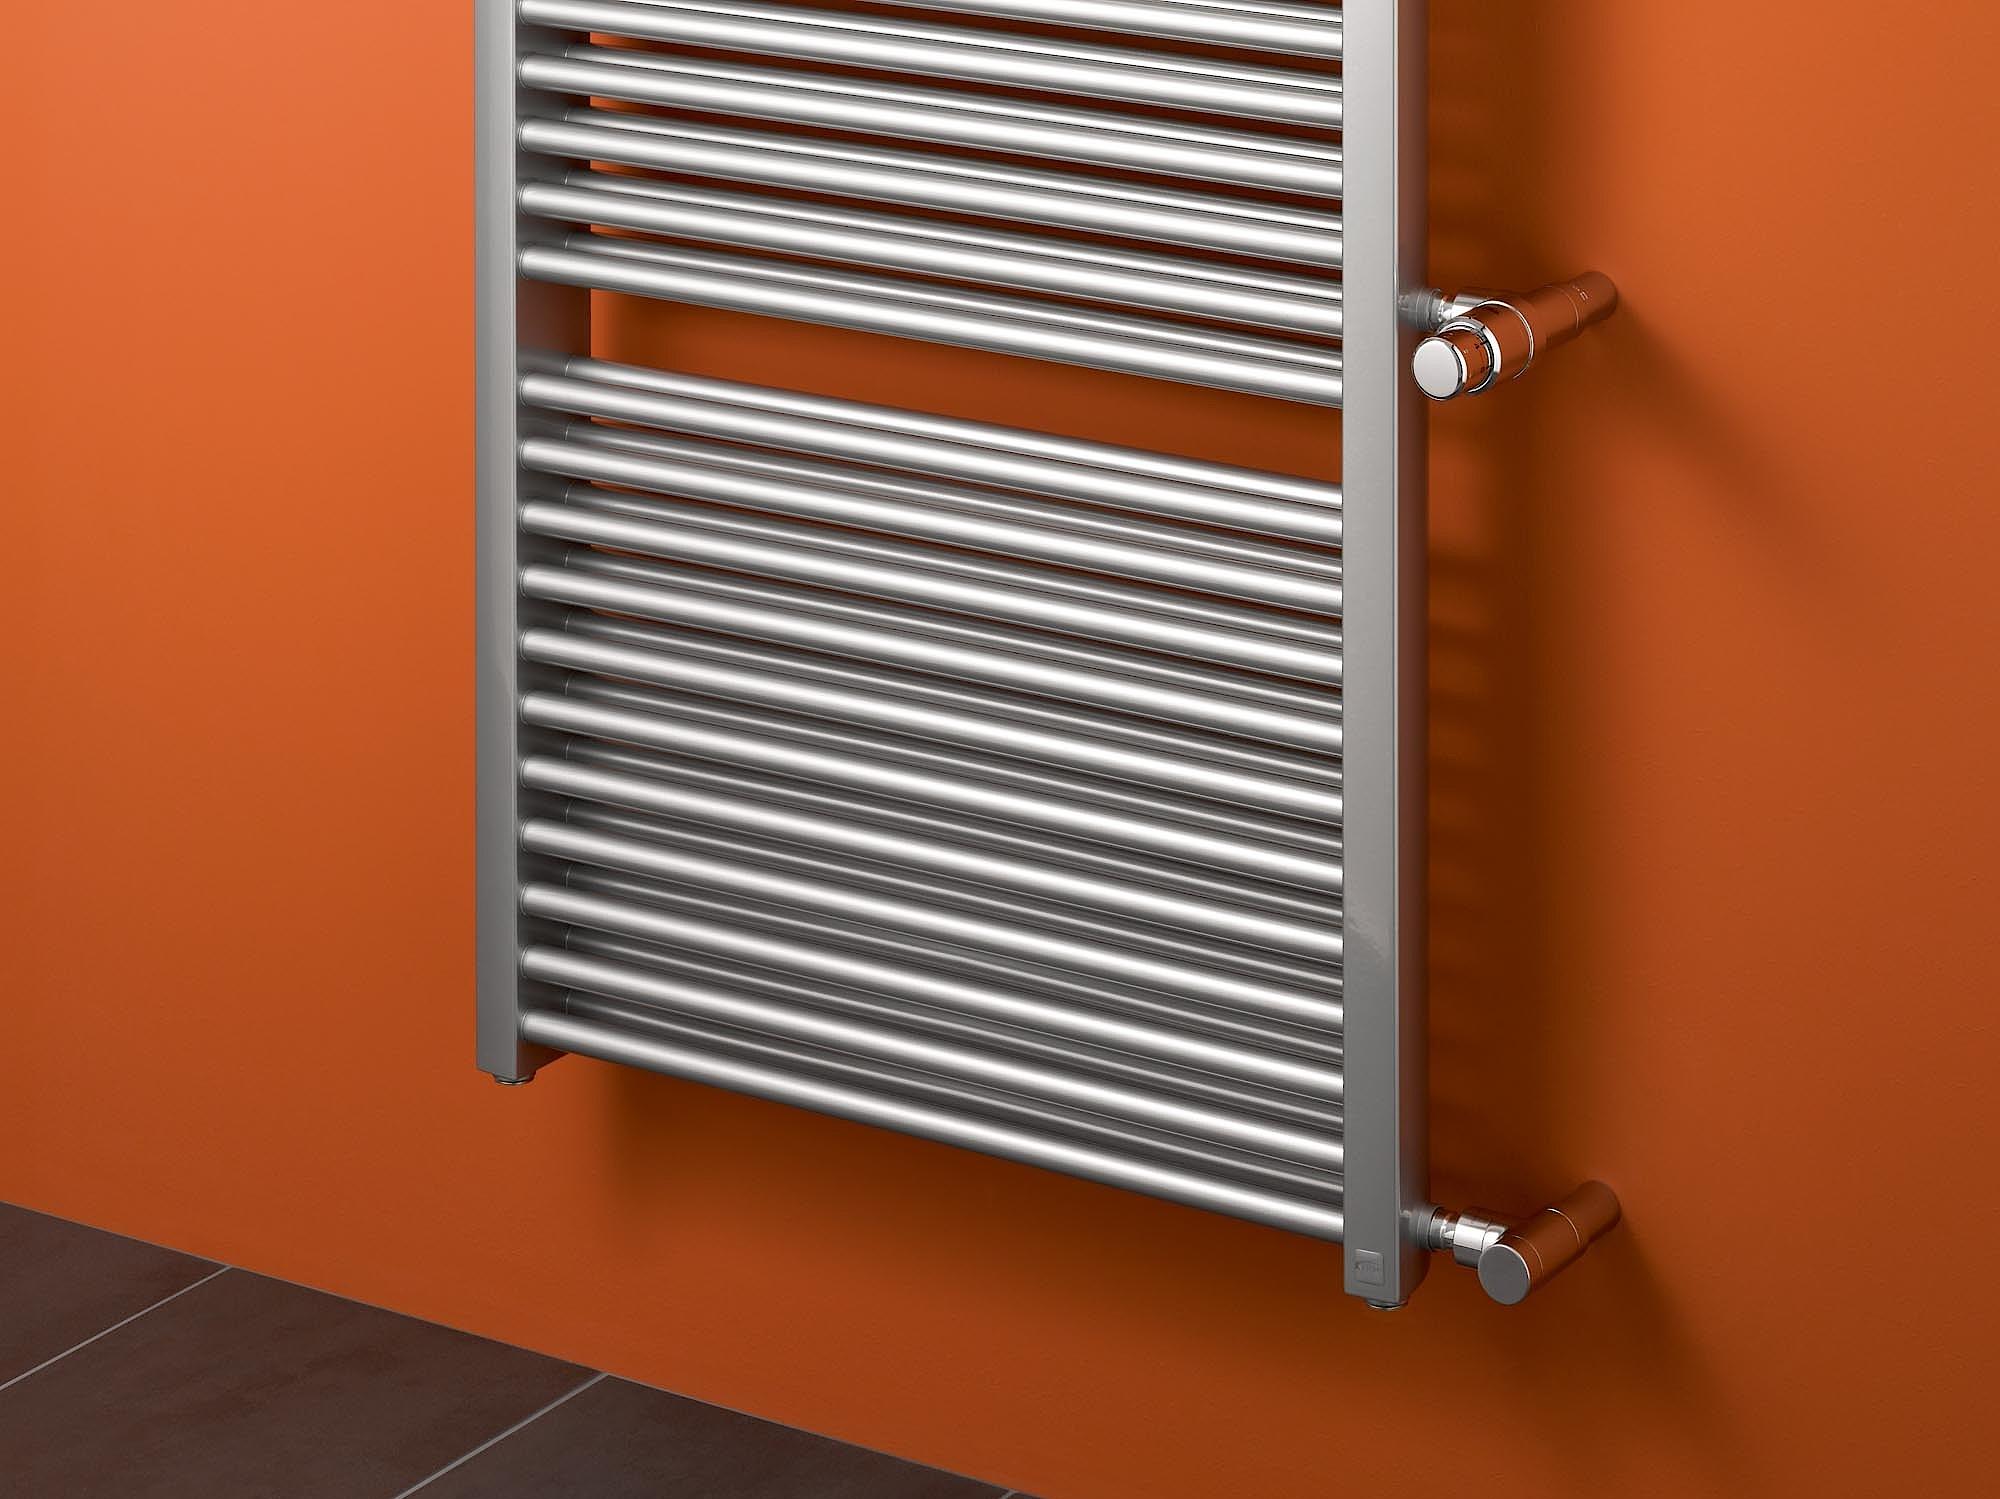 Le radiateur design et de salle de bain Duett de Kermi constitue une solution de rénovation rapide et rationnelle pour les travaux de modernisation.